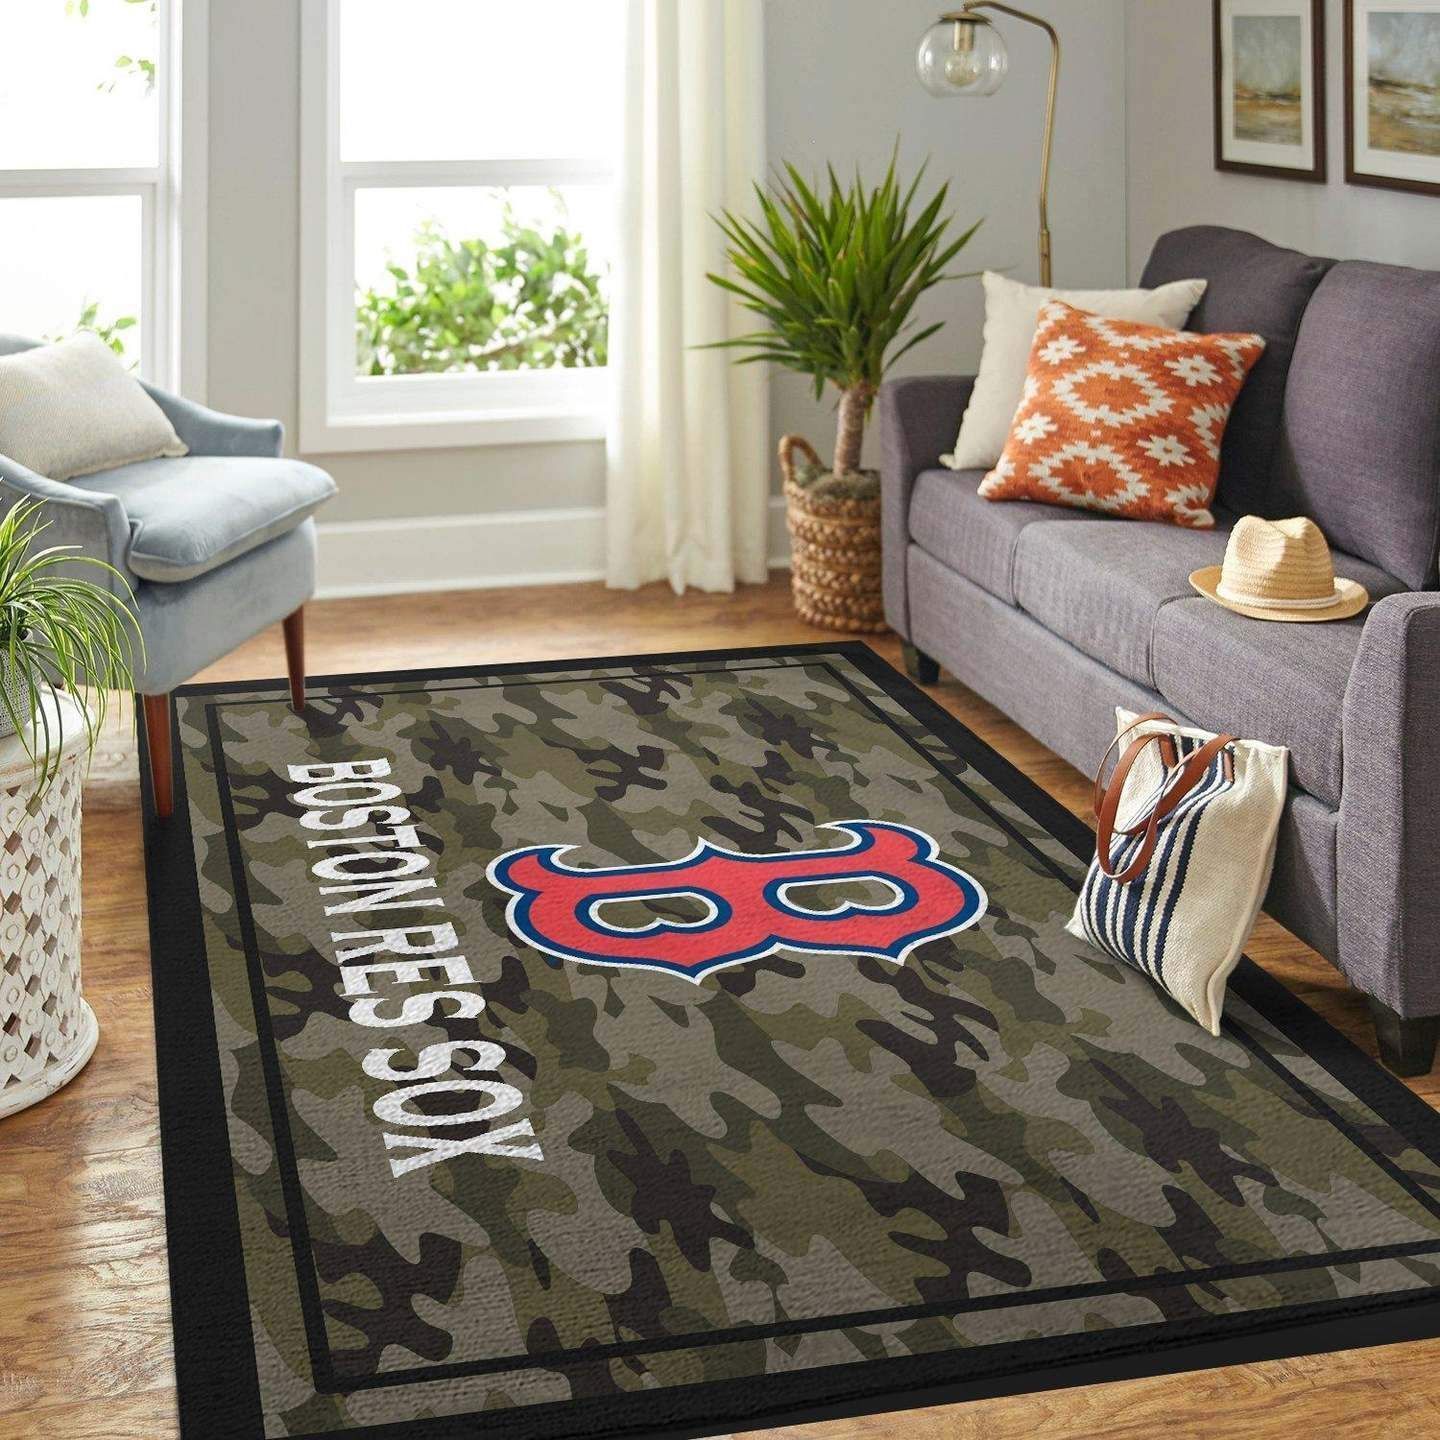 Boston Red Sox Mlb Baseball Baseball Type 8749 Rug Area Carpet Living Room Home Decor